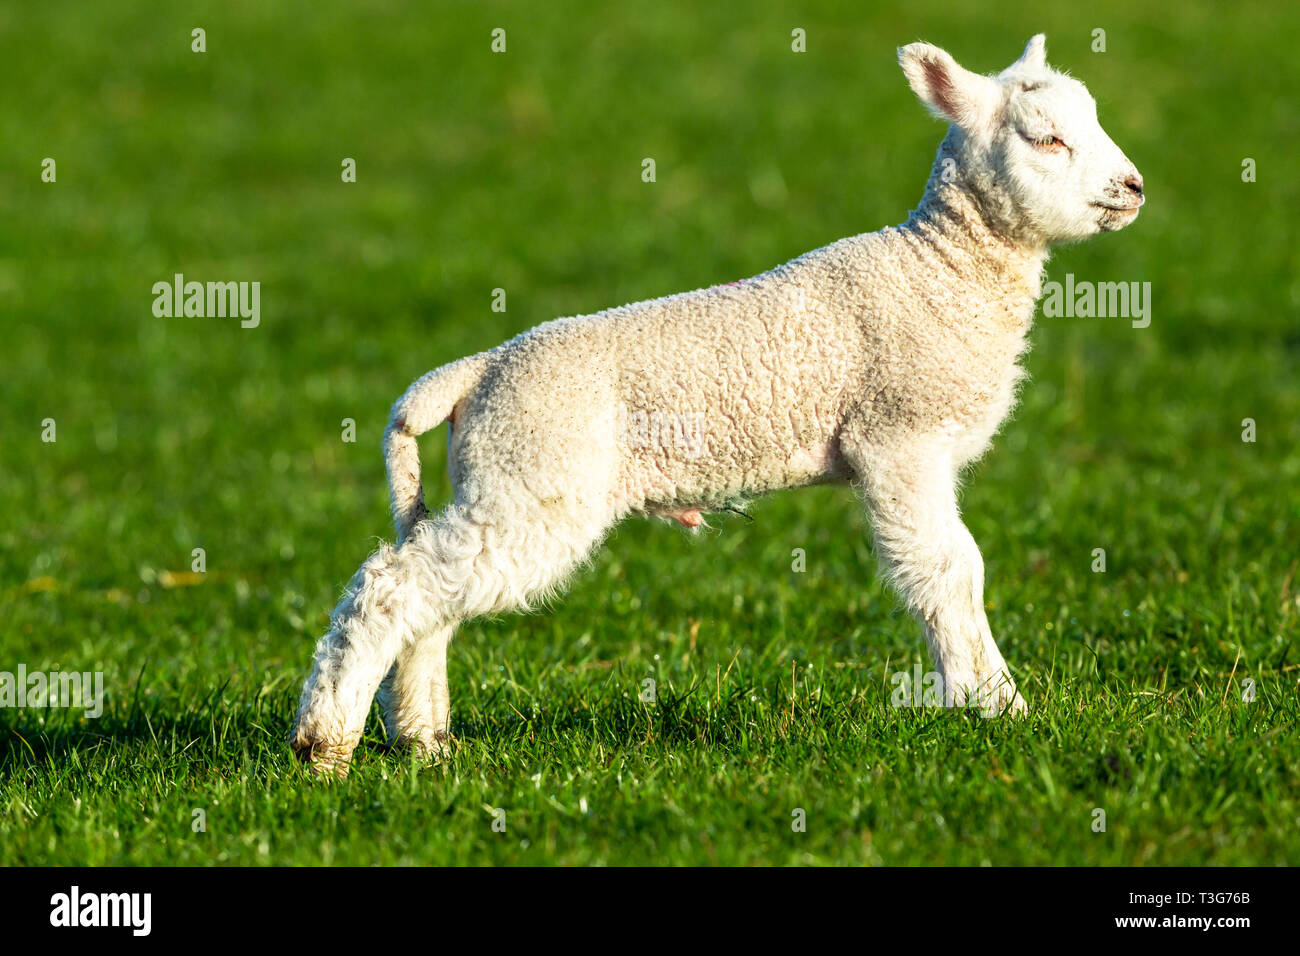 Pecore e agnelli Dalesbred maschio o ram agnello rivolto verso destra nel lussureggiante verde prato. Yorkshire Dales, Inghilterra. Regno Unito. Paesaggio, orizzontale. Spazio per la copia. Foto Stock